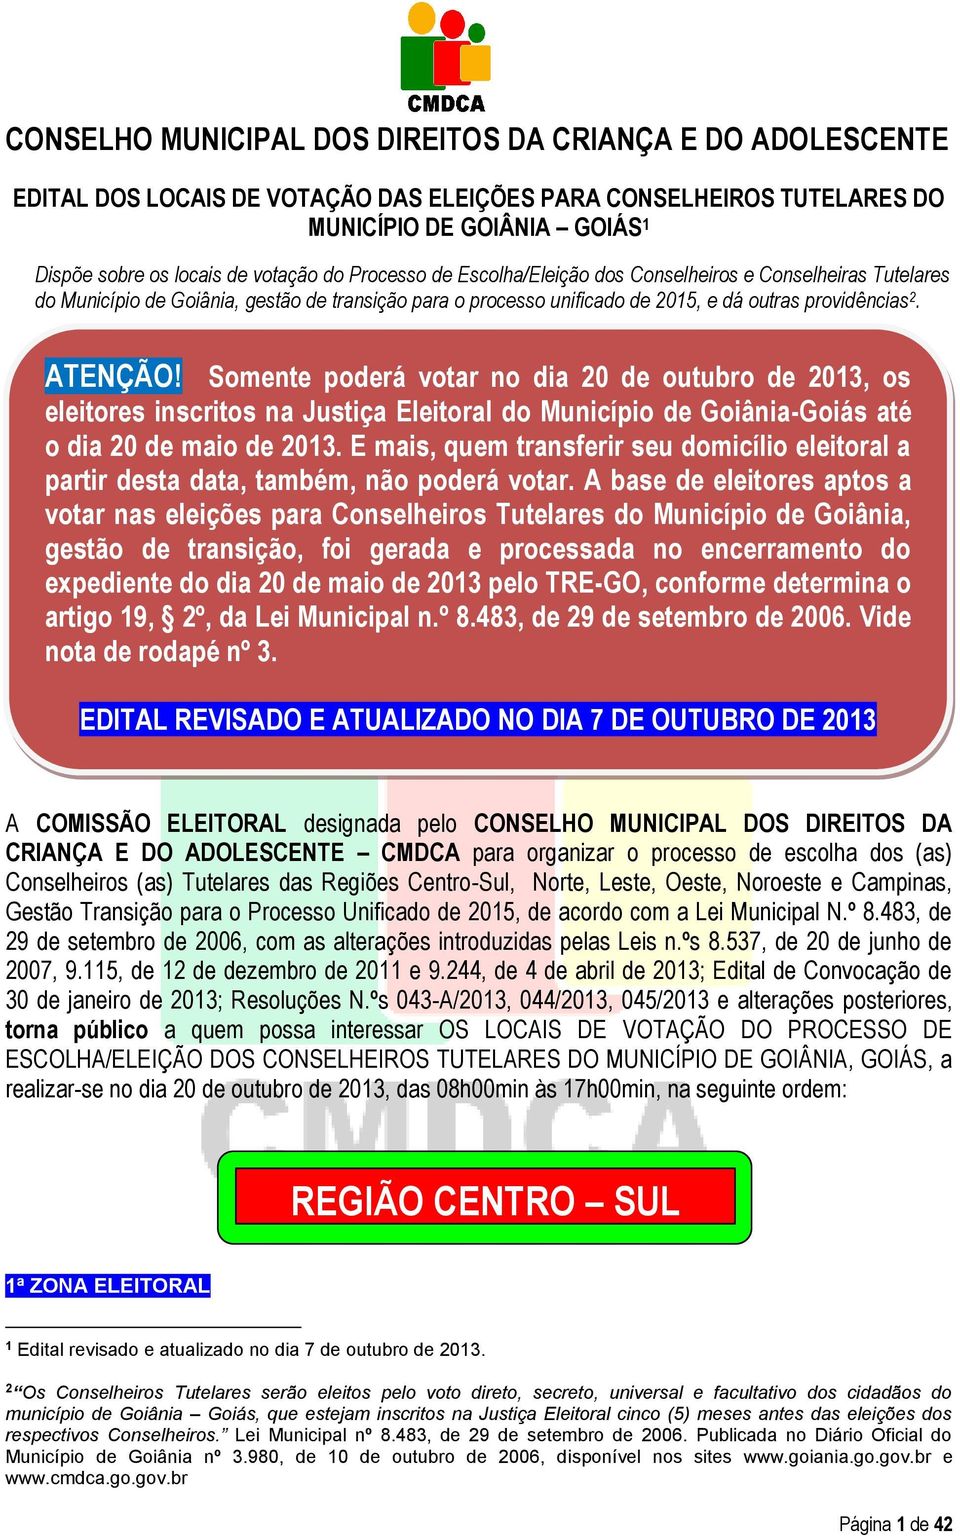 Somente poderá votar no dia 20 de outubro de 2013, os eleitores inscritos na Justiça Eleitoral do Município de Goiânia-Goiás até o dia 20 de maio de 2013.